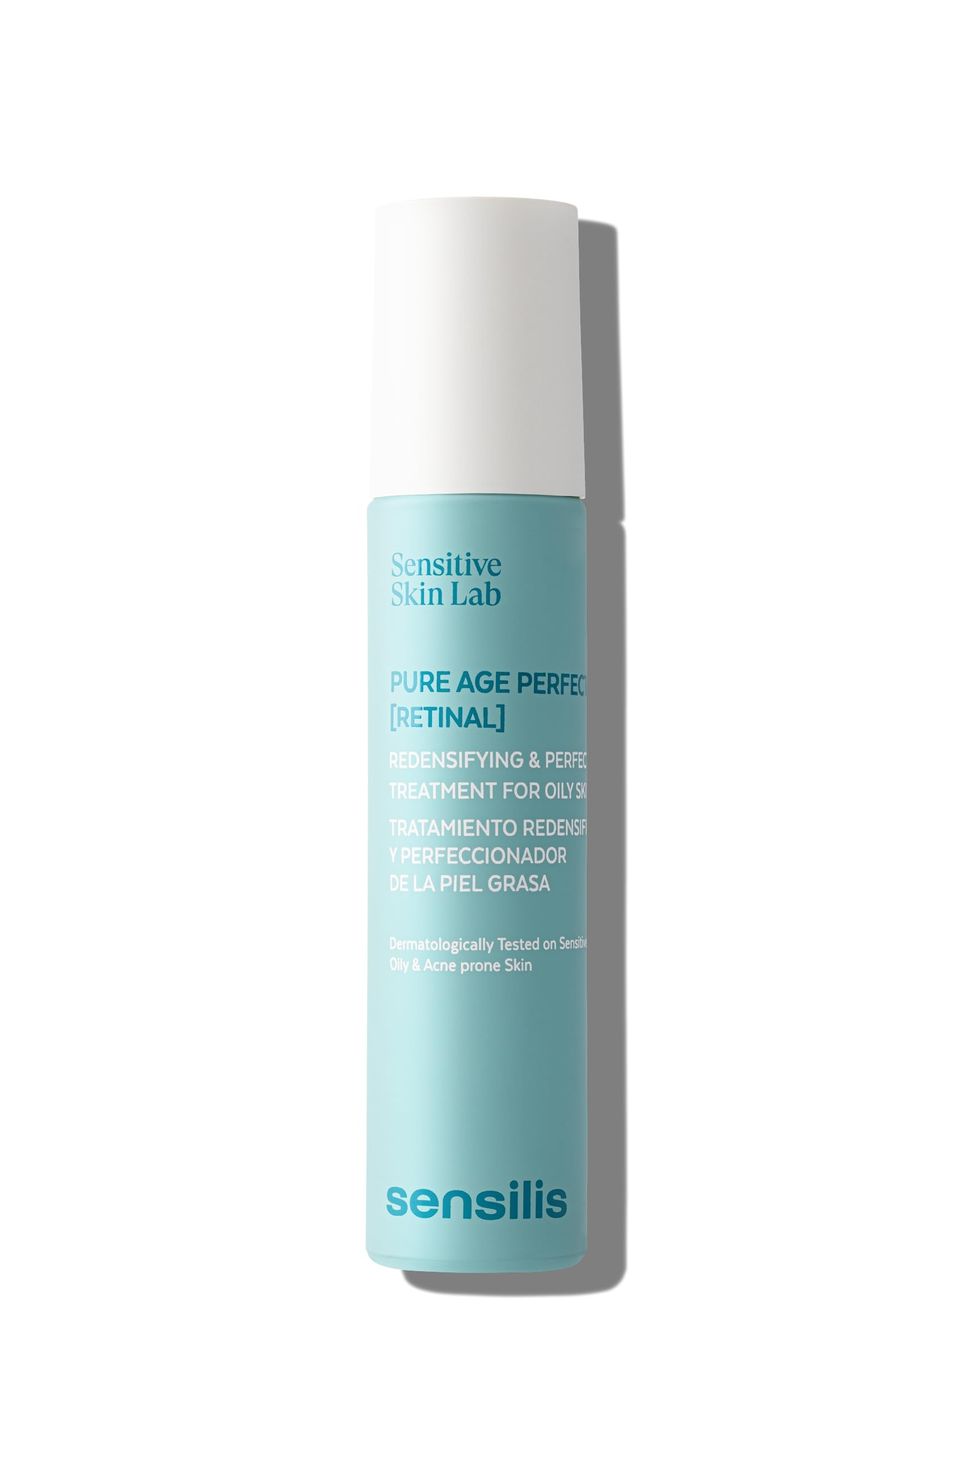 Sensilis - Pure Age Perfection Retinal, Sérum Oil Free Redensificante y Perfeccionador, con Silicio Orgánico y Prebióticos, Apto para Pieles Sensibles, Grasas o Acneicas - 50 ml